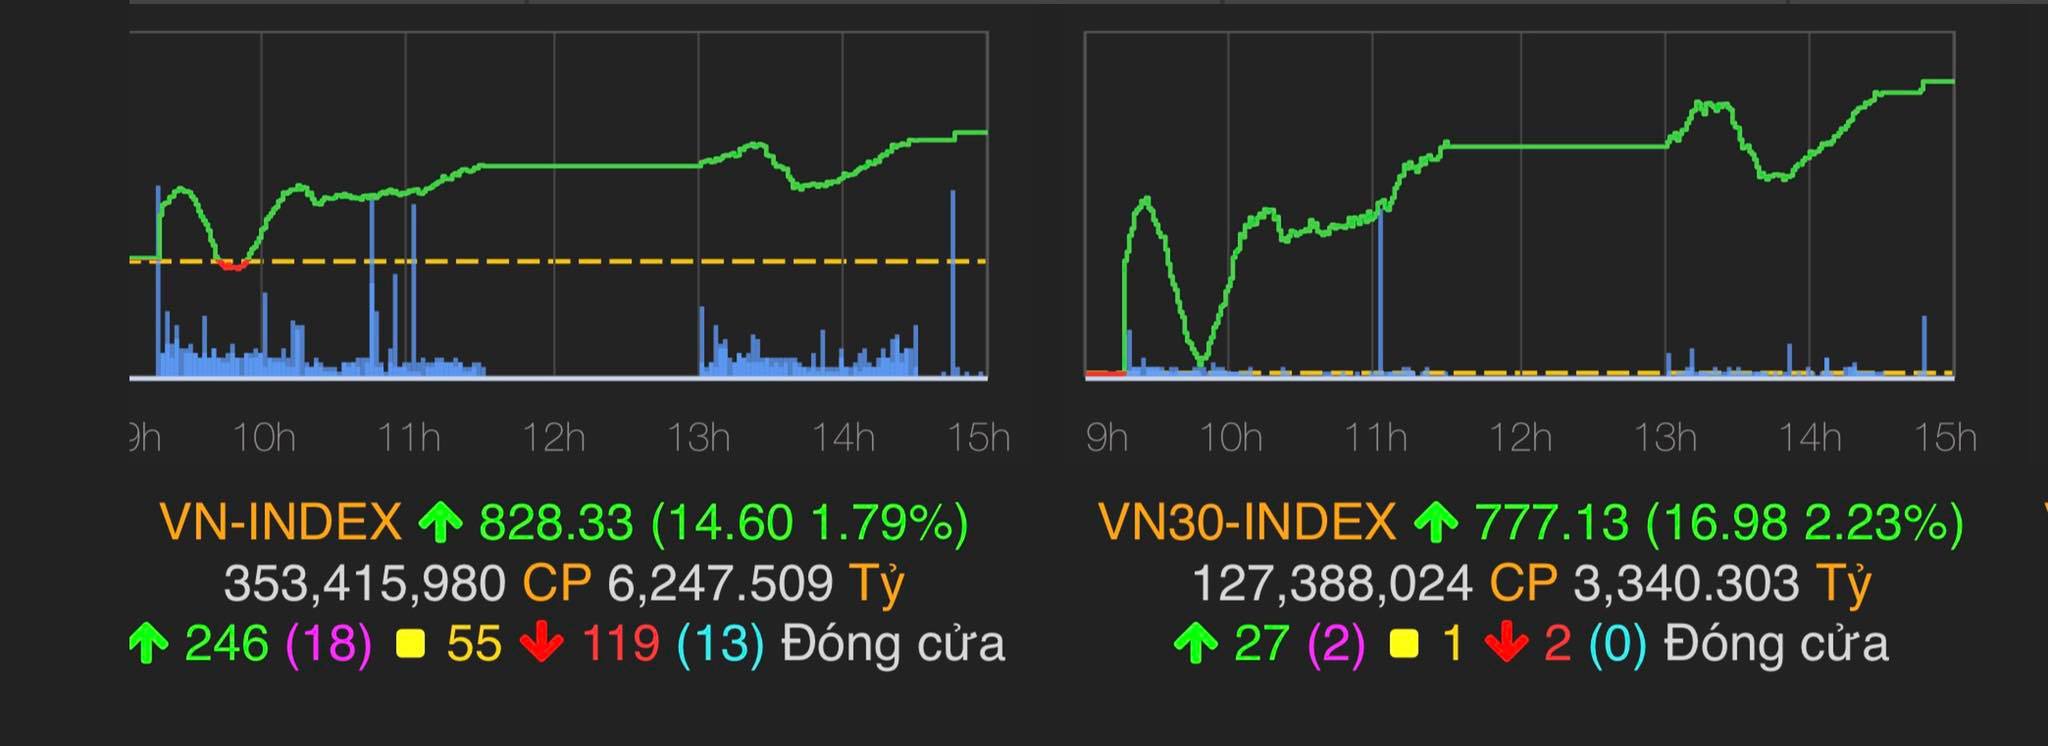 VN-Index tăng 14,6 điểm (tương đương 1,79%) lên mốc 828,33 điểm.